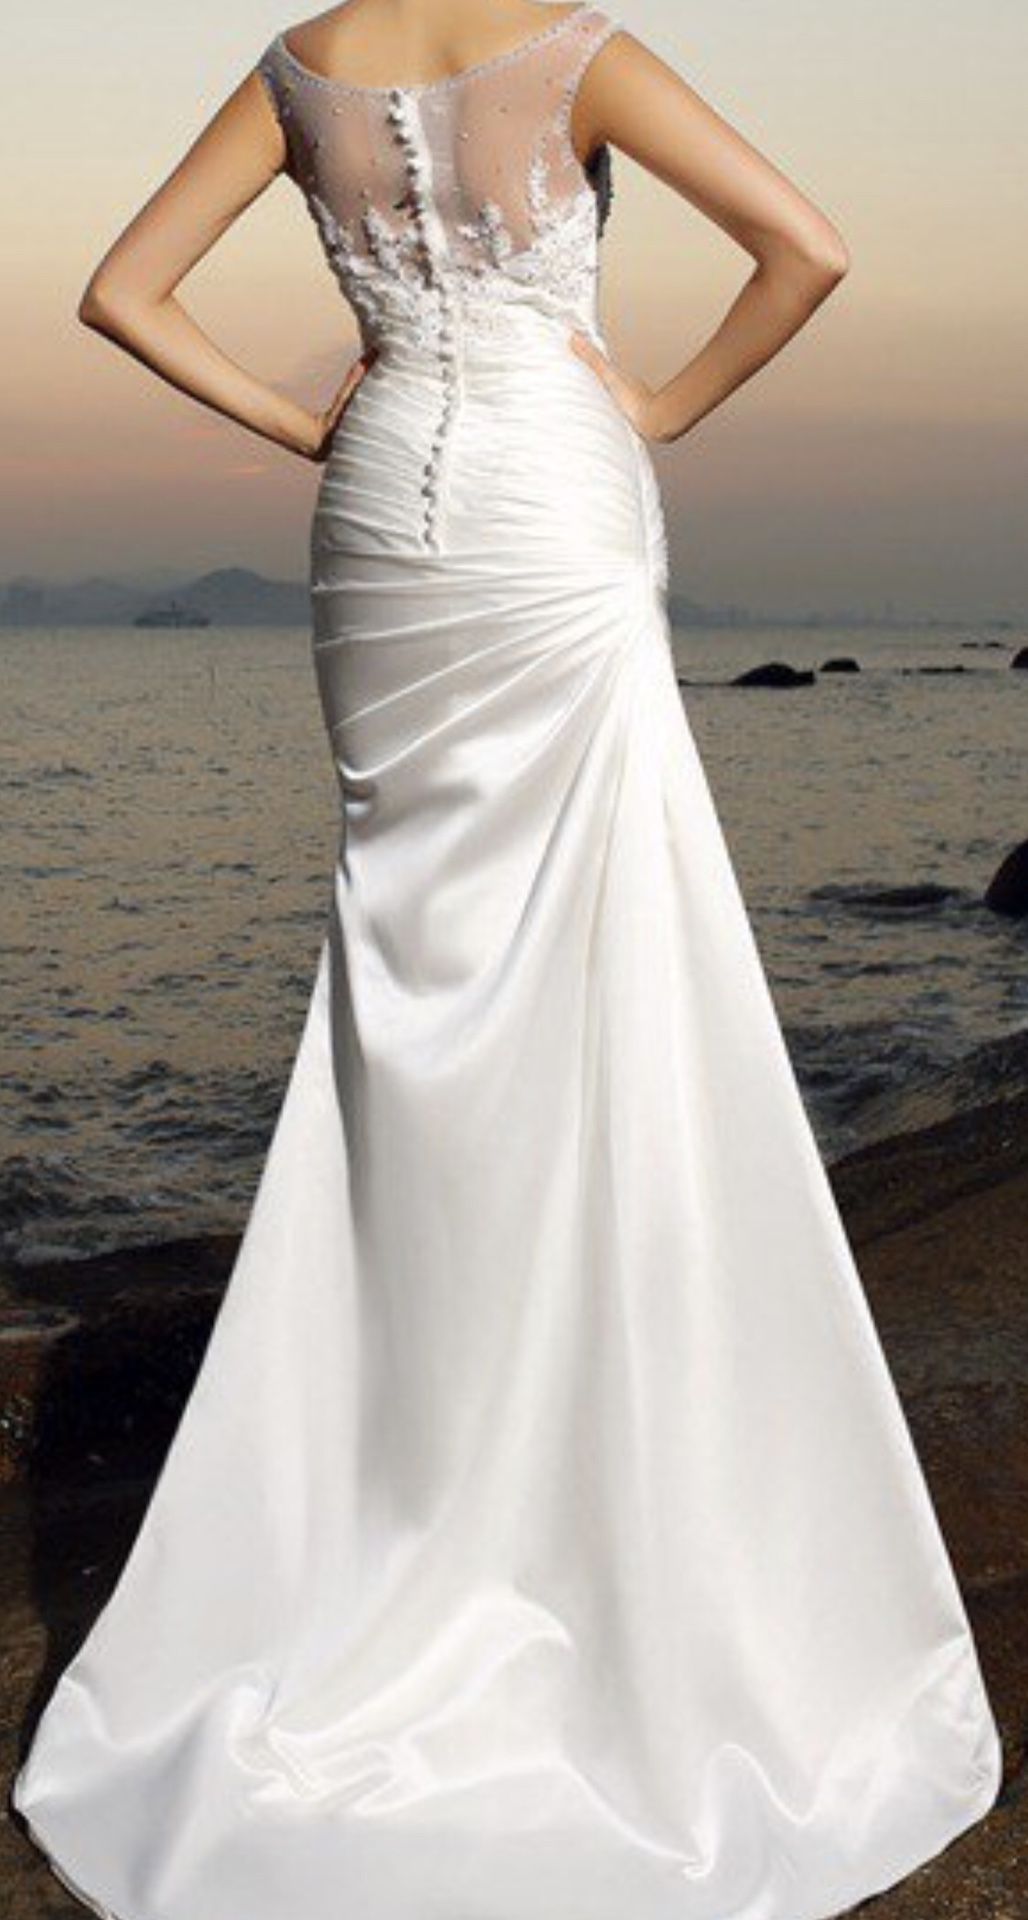 Brand new Wedding dress-size 8